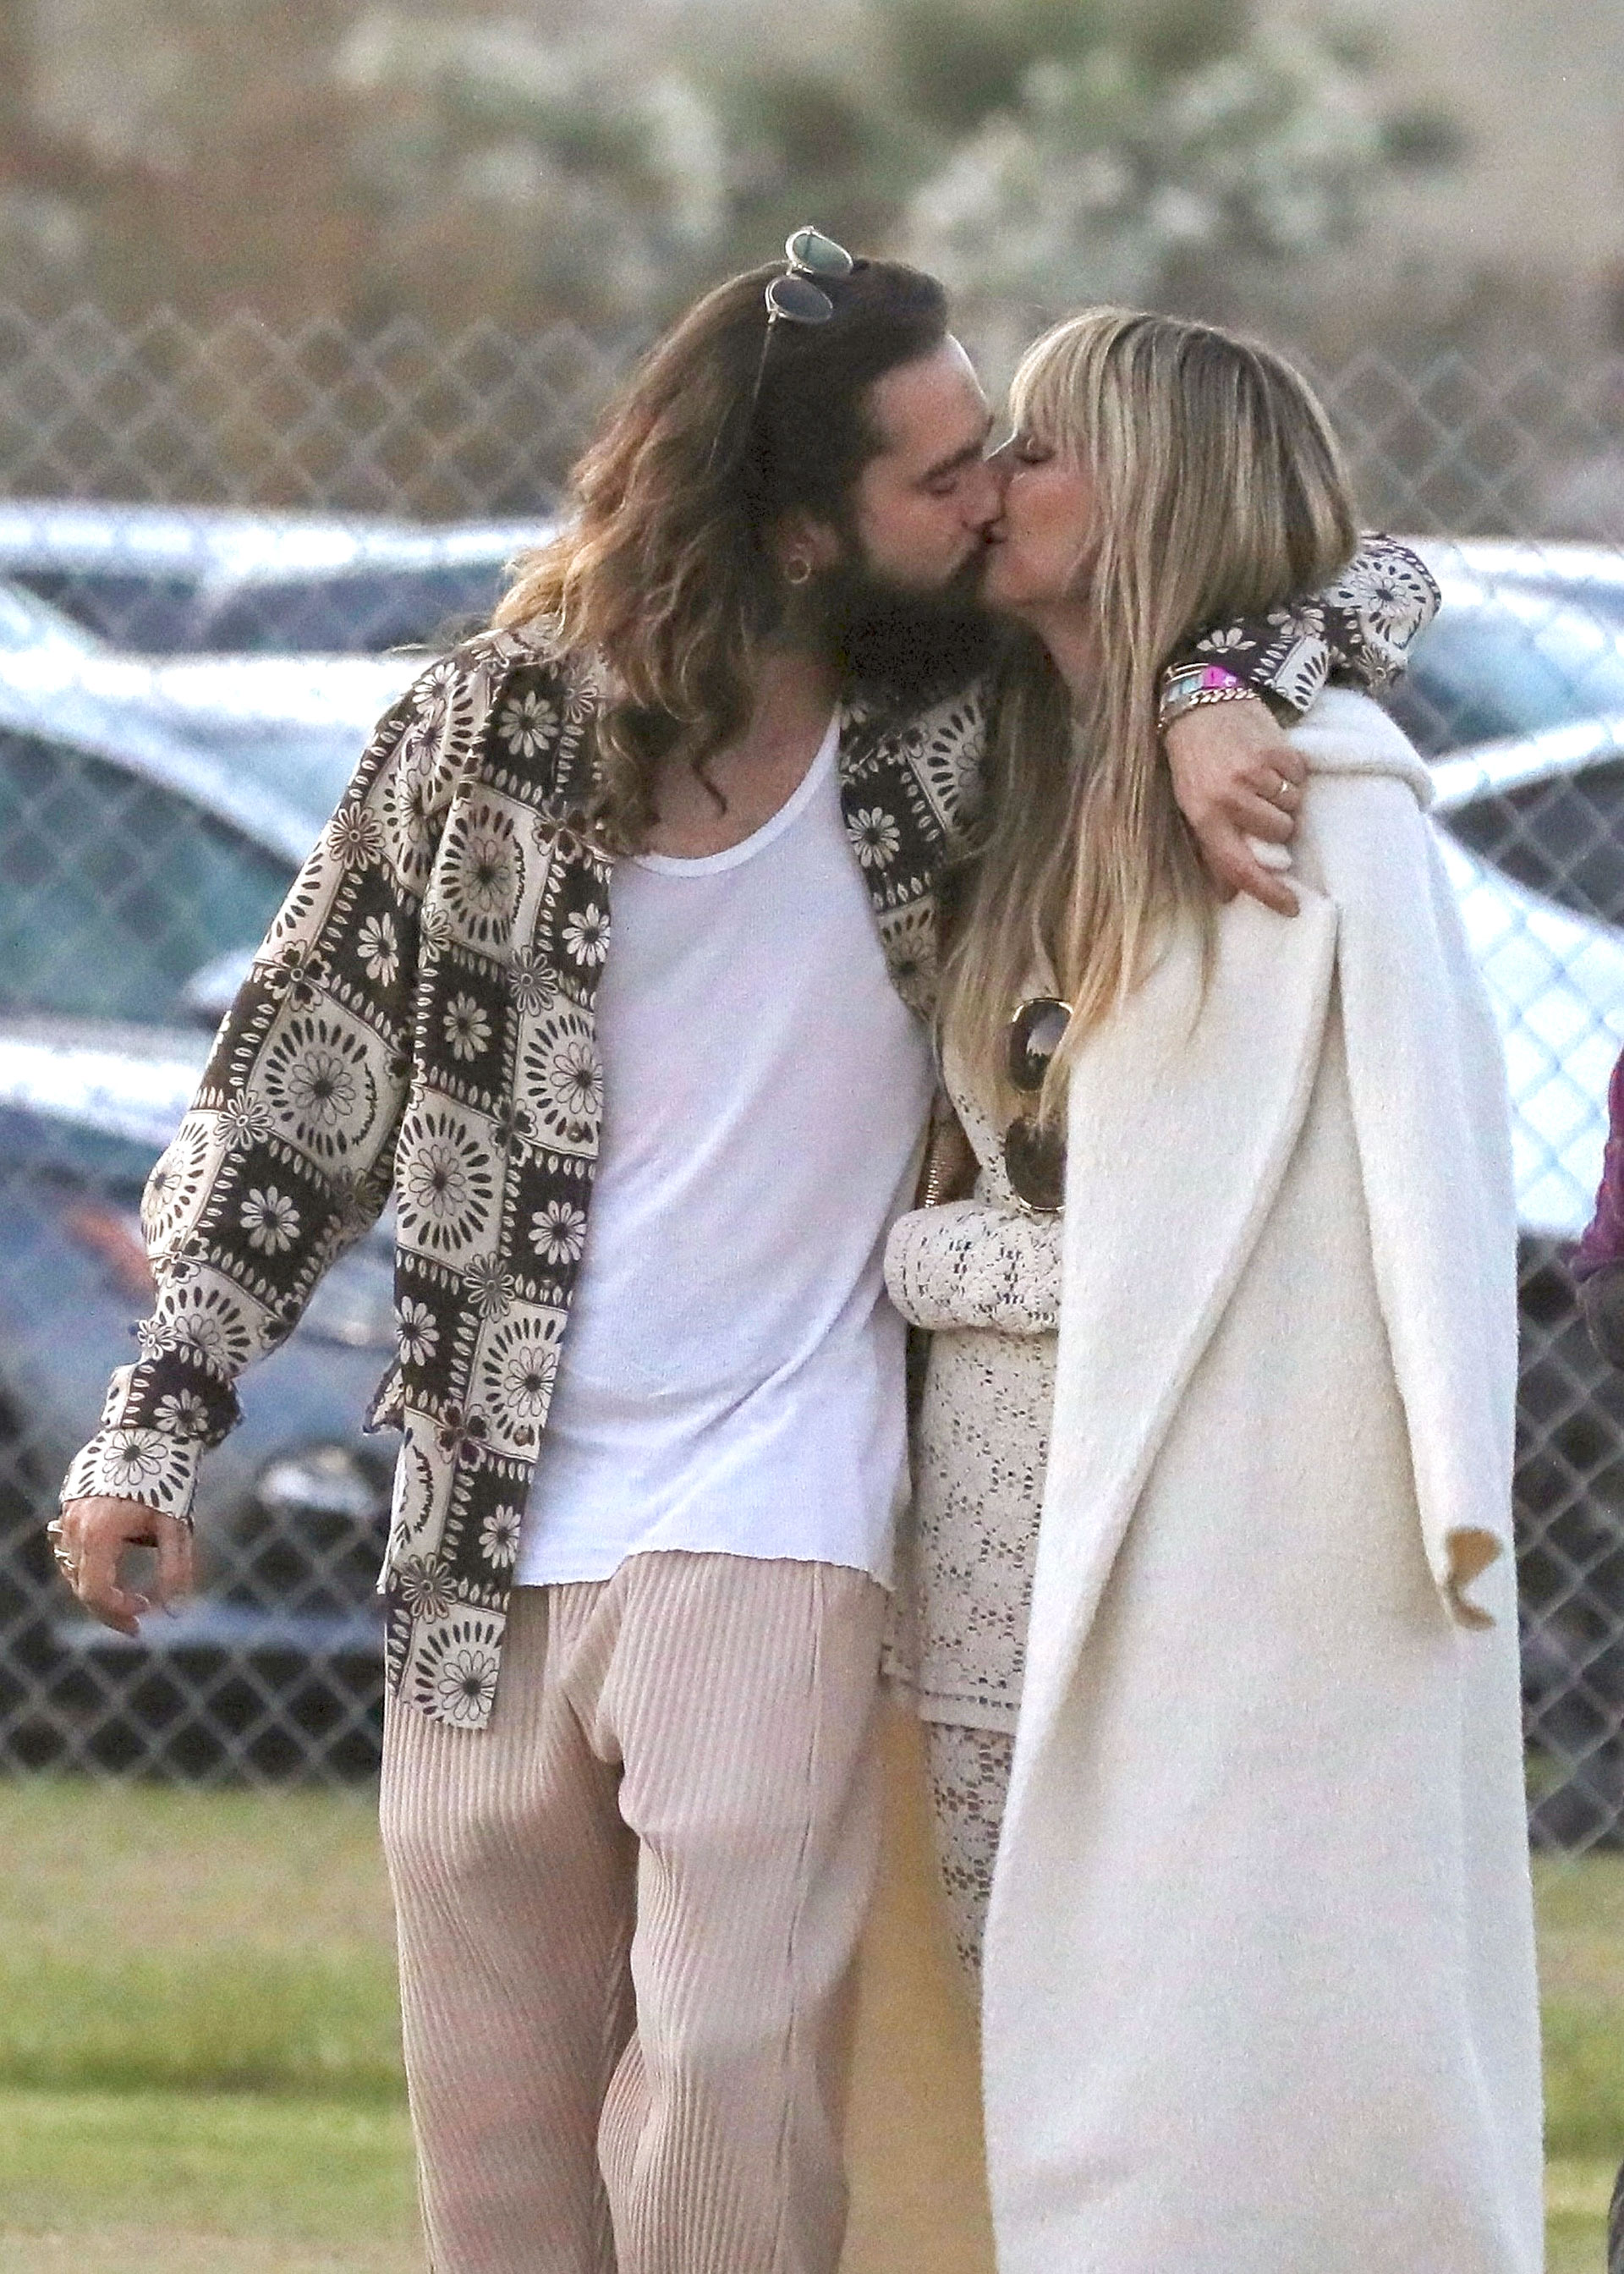 Heidi Klum y Tom Kaulitz estuvieron presentes en un festival de música y se mostraron muy cariñosos. Ella, lució un look off white: conjunto de pantalón y remera en crochet y un tapado largo. Él, por su parte, llevó un pantalón clarito, una remera blanca y una camisa estampada